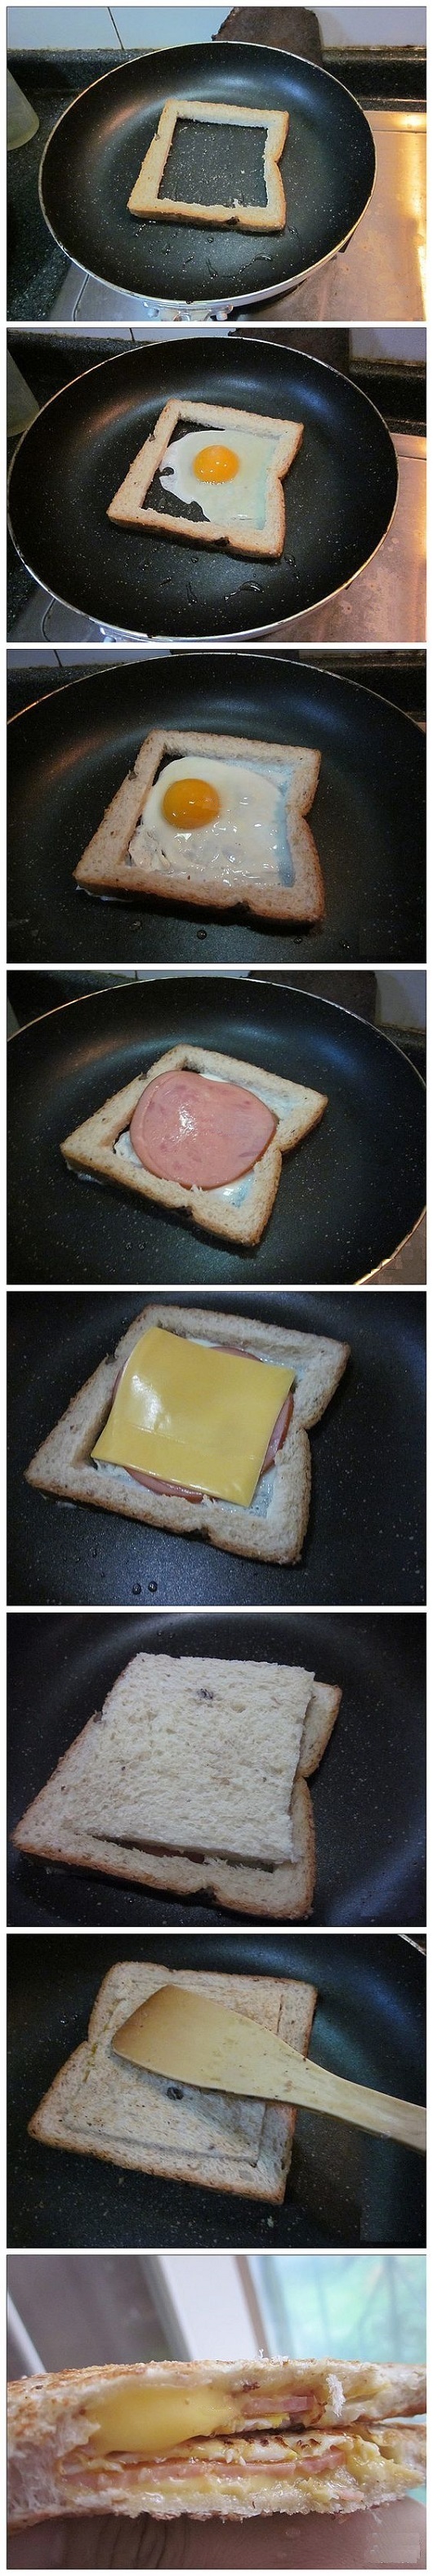 тост с яйцом, колбасой и сыром